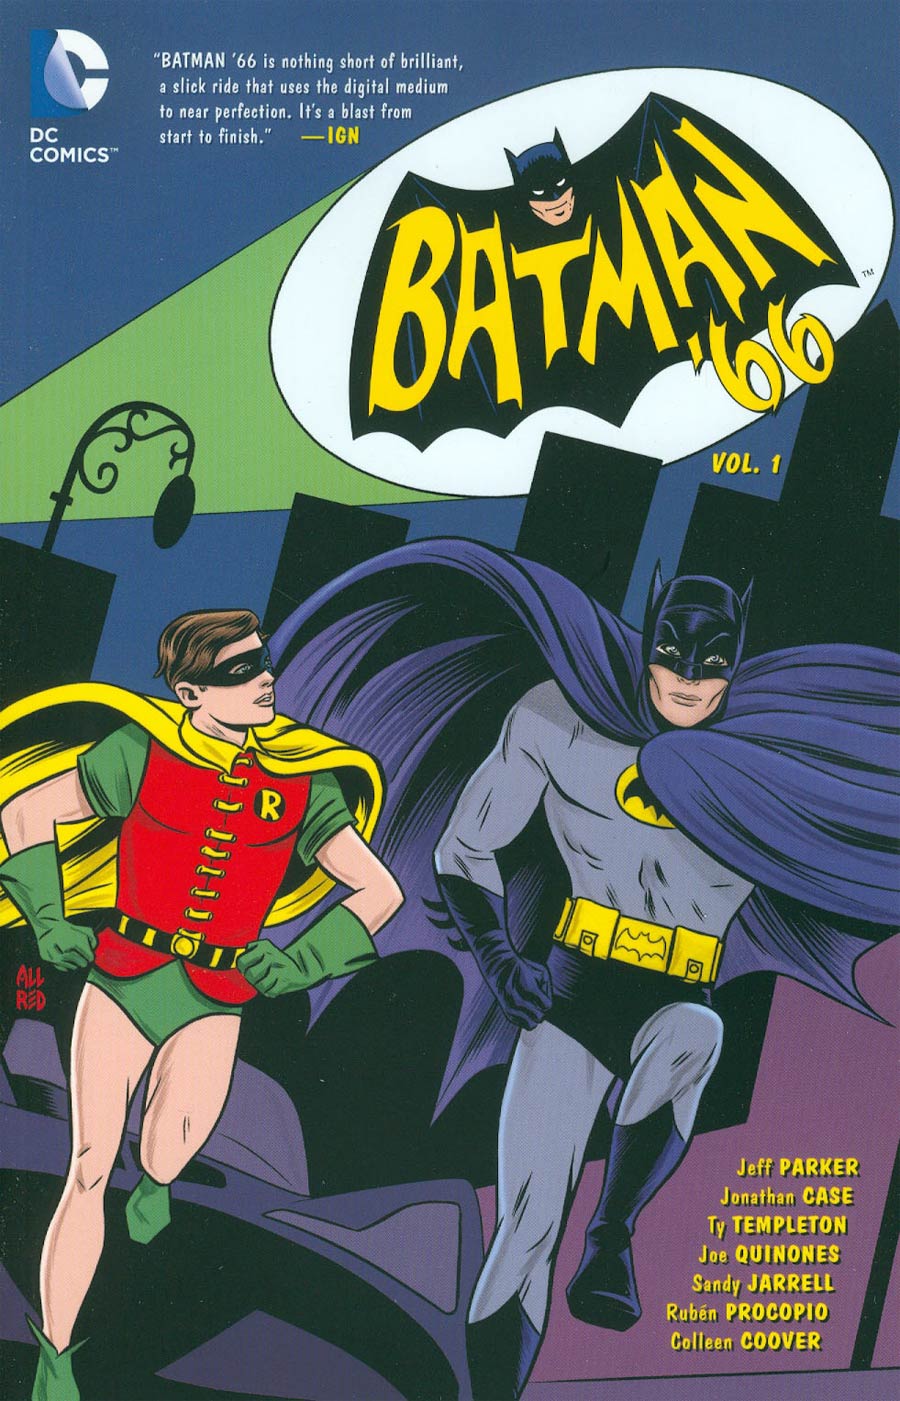 Batman 66 Vol 1 TP